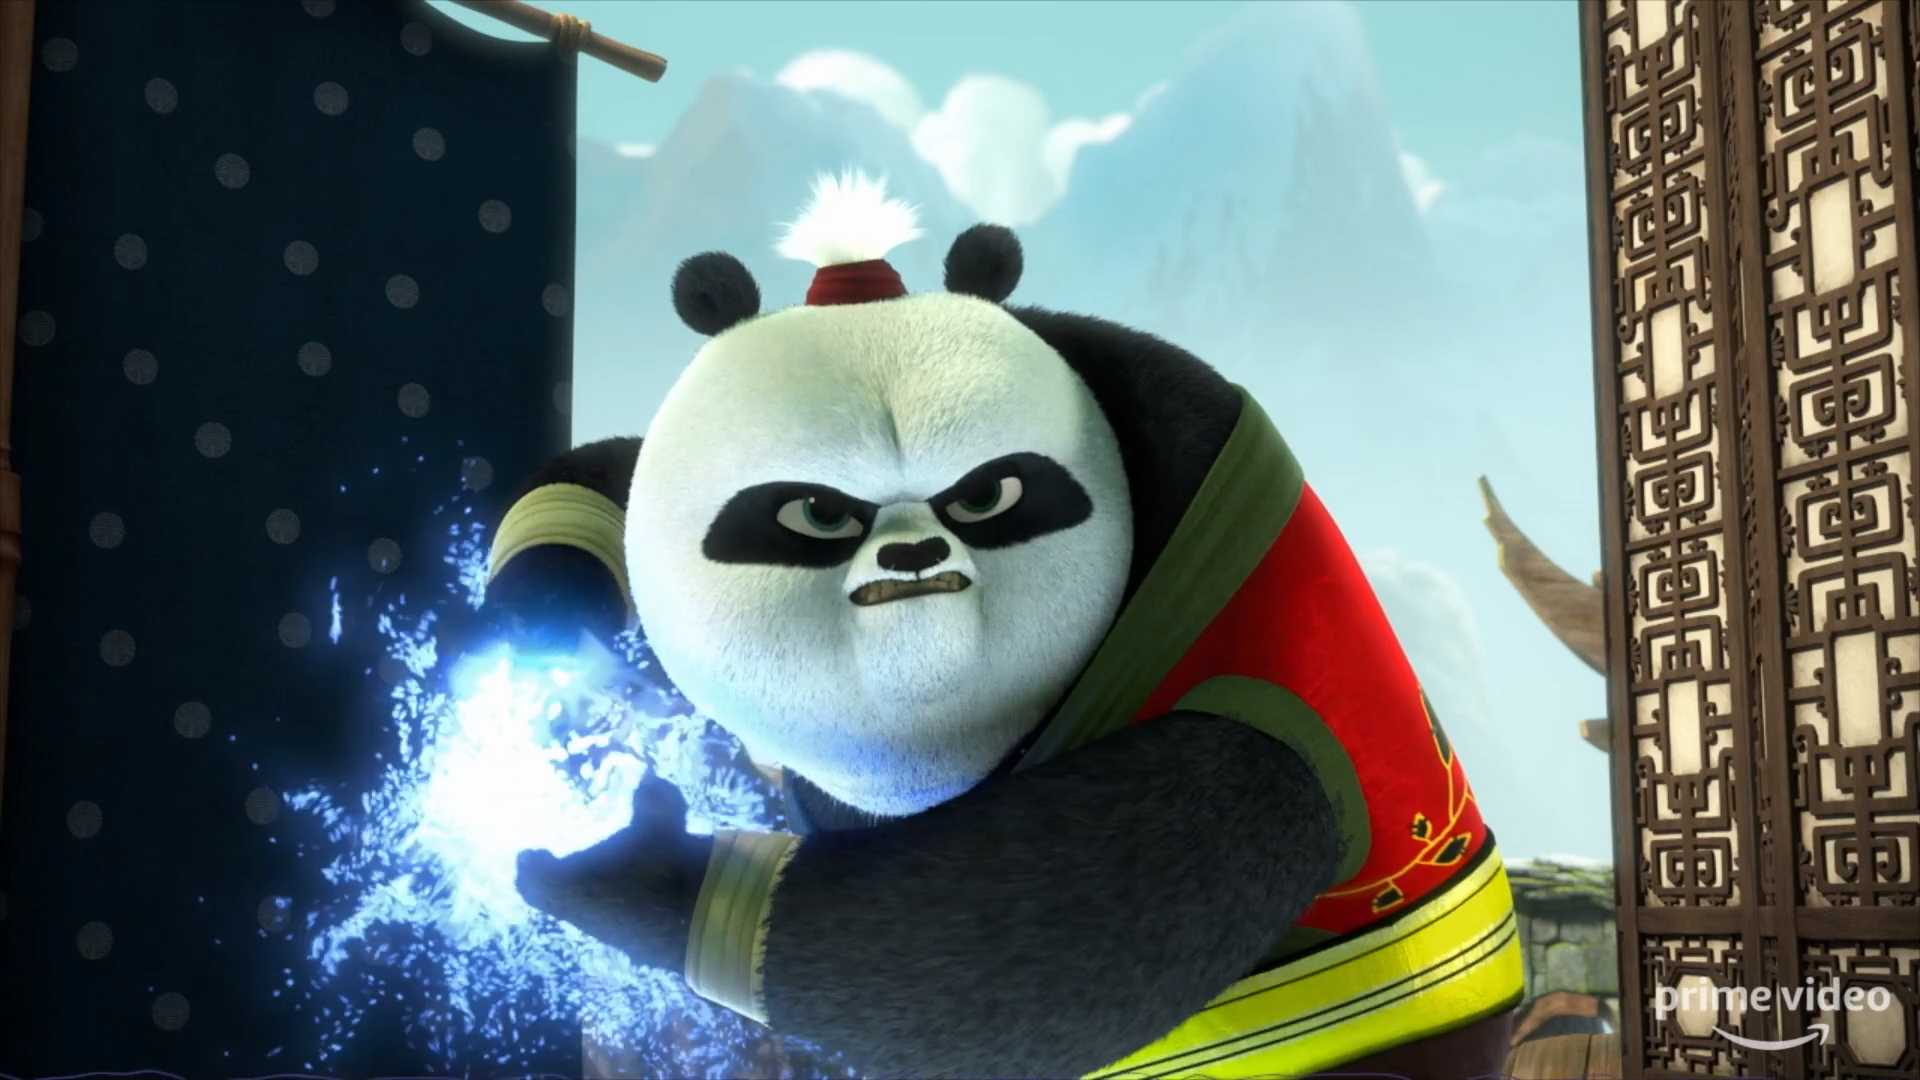 Кунг-фу панда 4